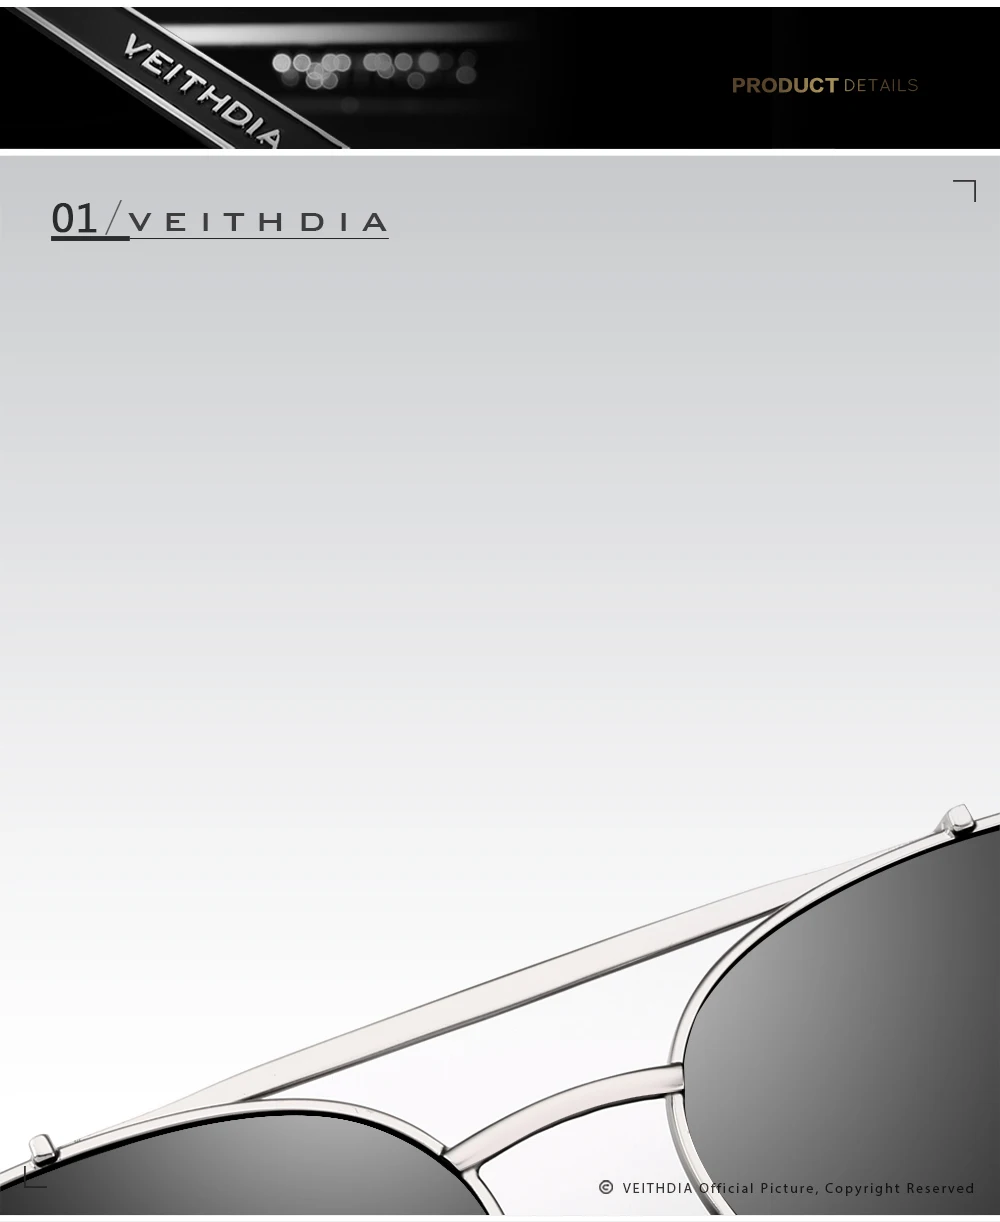 Мужские солнцезащитные очки VEITHDIA, винтажные брендовые прямоугольные очки из нержавеющей стали с поляризационными стеклами, степень защиты UV400, модель 2493